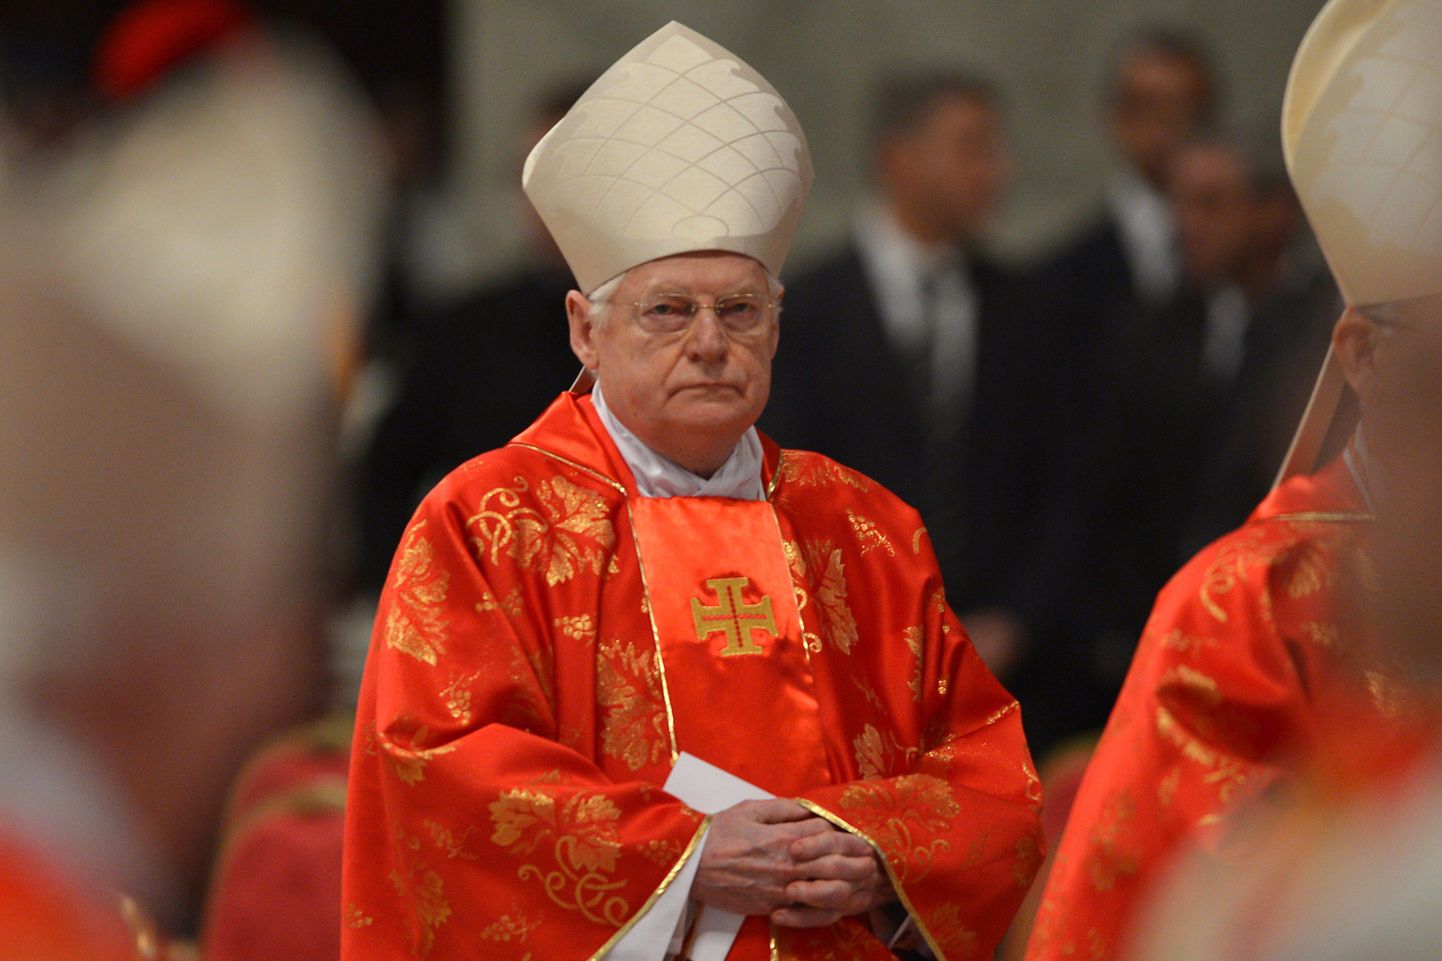 Itaalia kardinal Angelo Scola täna Püha Peetruse basiilikas toimunud missal.